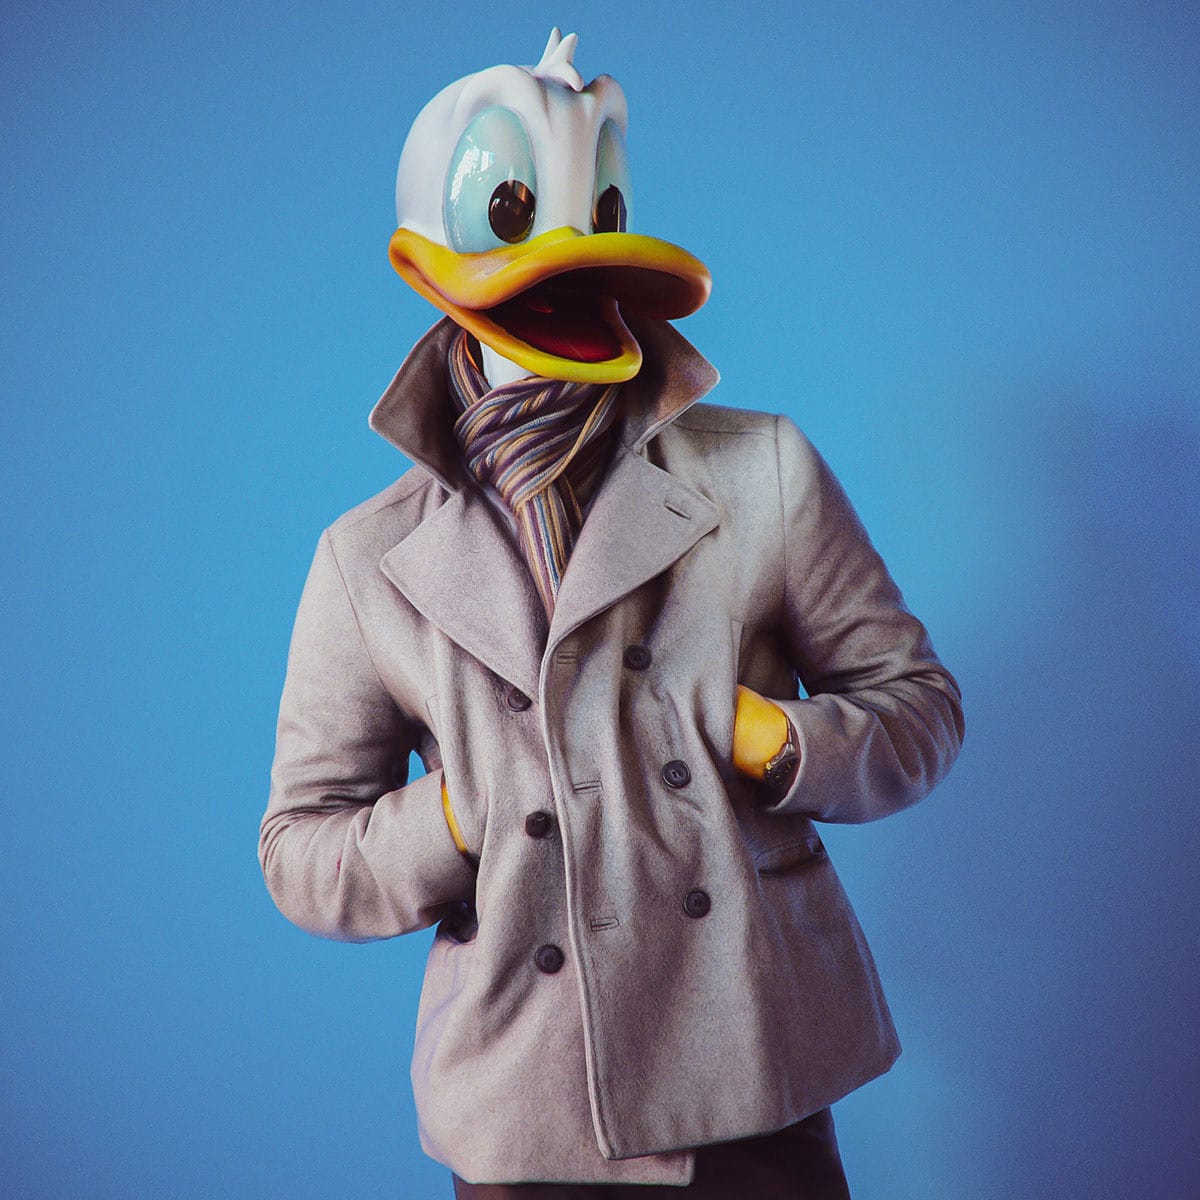 Montagem 3D mostra do Pato Donald no corpo de um ser humano real, vestindo um sobretudo e cachecol